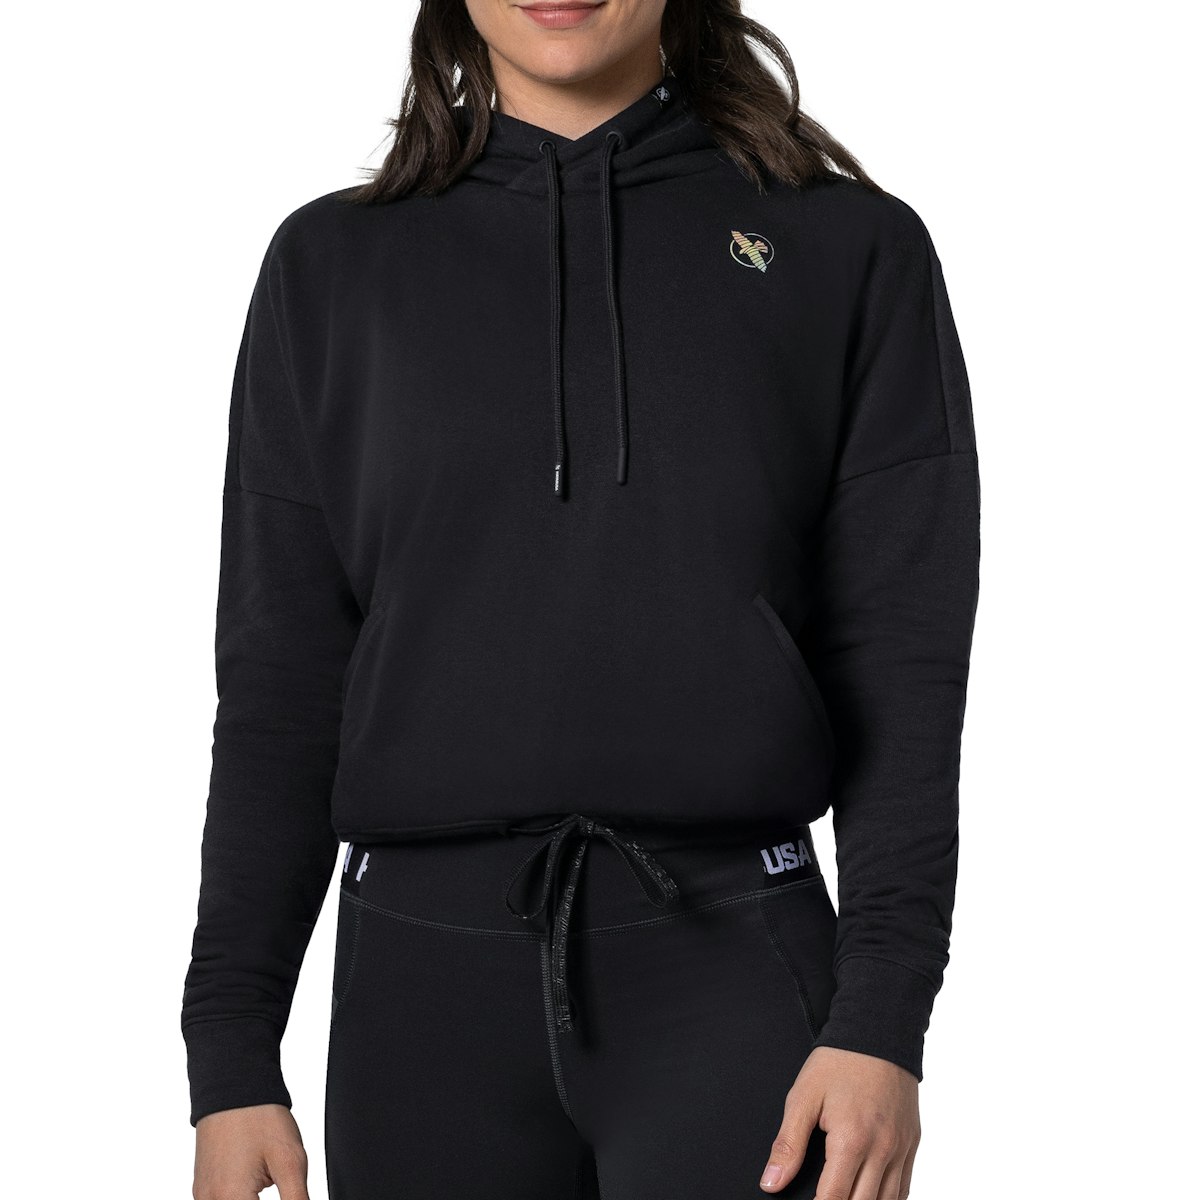 LUYAA Womens Crop Sweatshirt Quarter Zip Fleece Lined Pullover